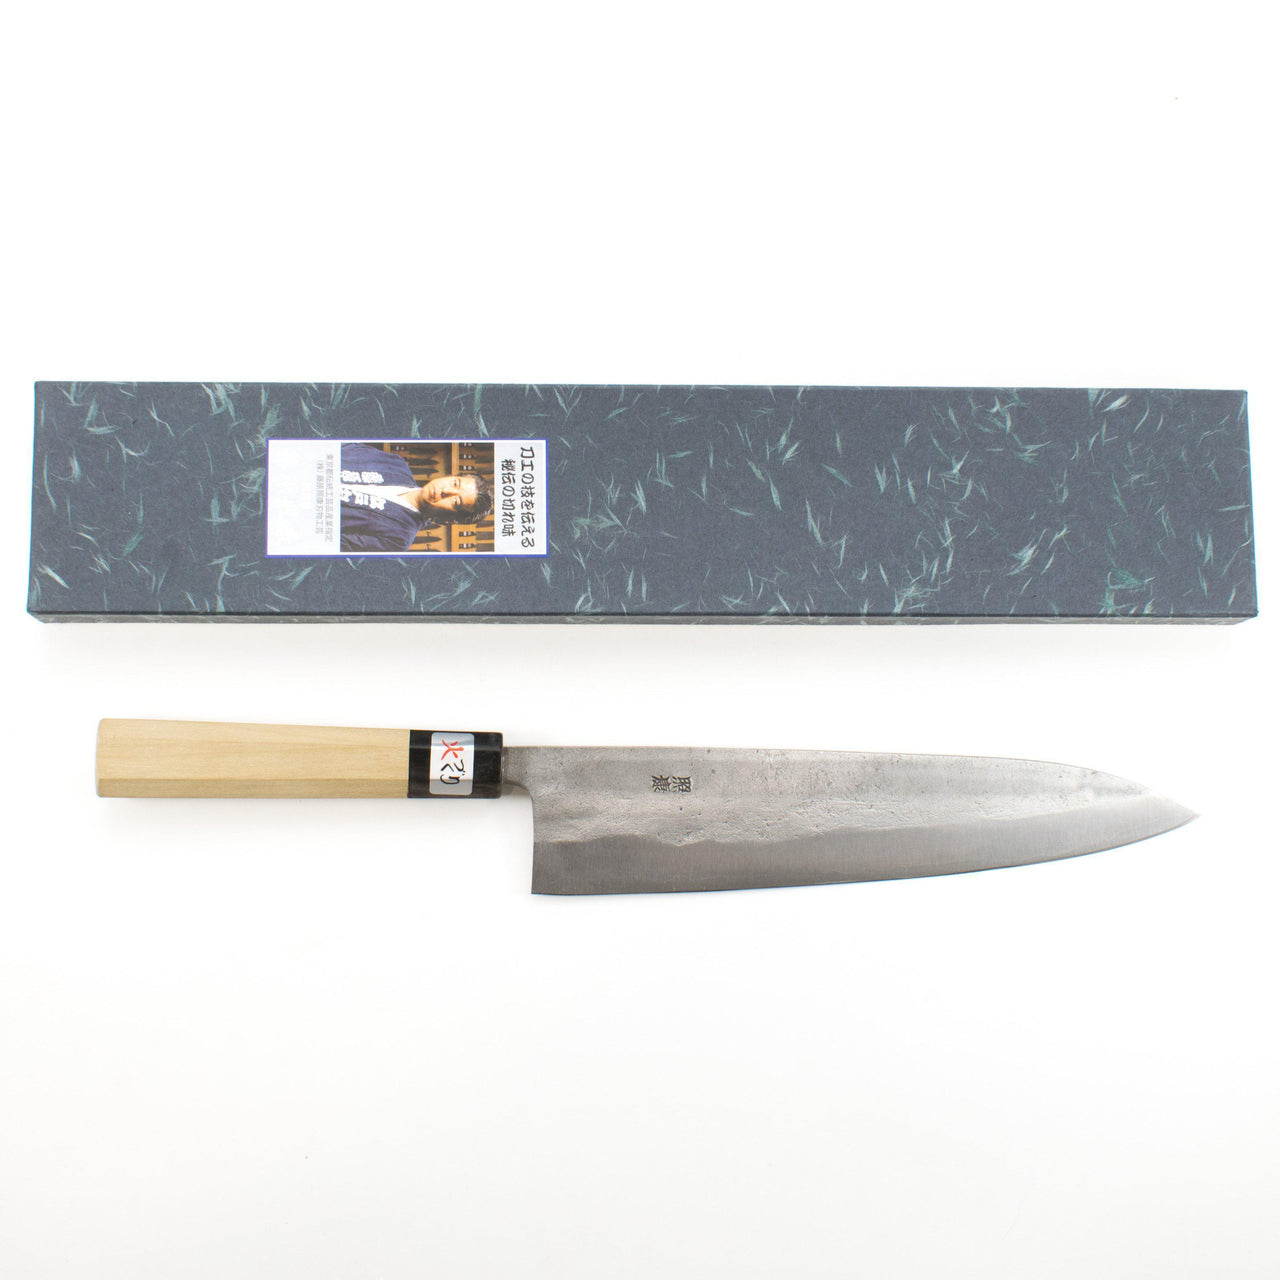 Fujiwara Teruyasu Nashiji Gyuto 240mm-Knife-Fujiwara Teruyasu-Carbon Knife Co